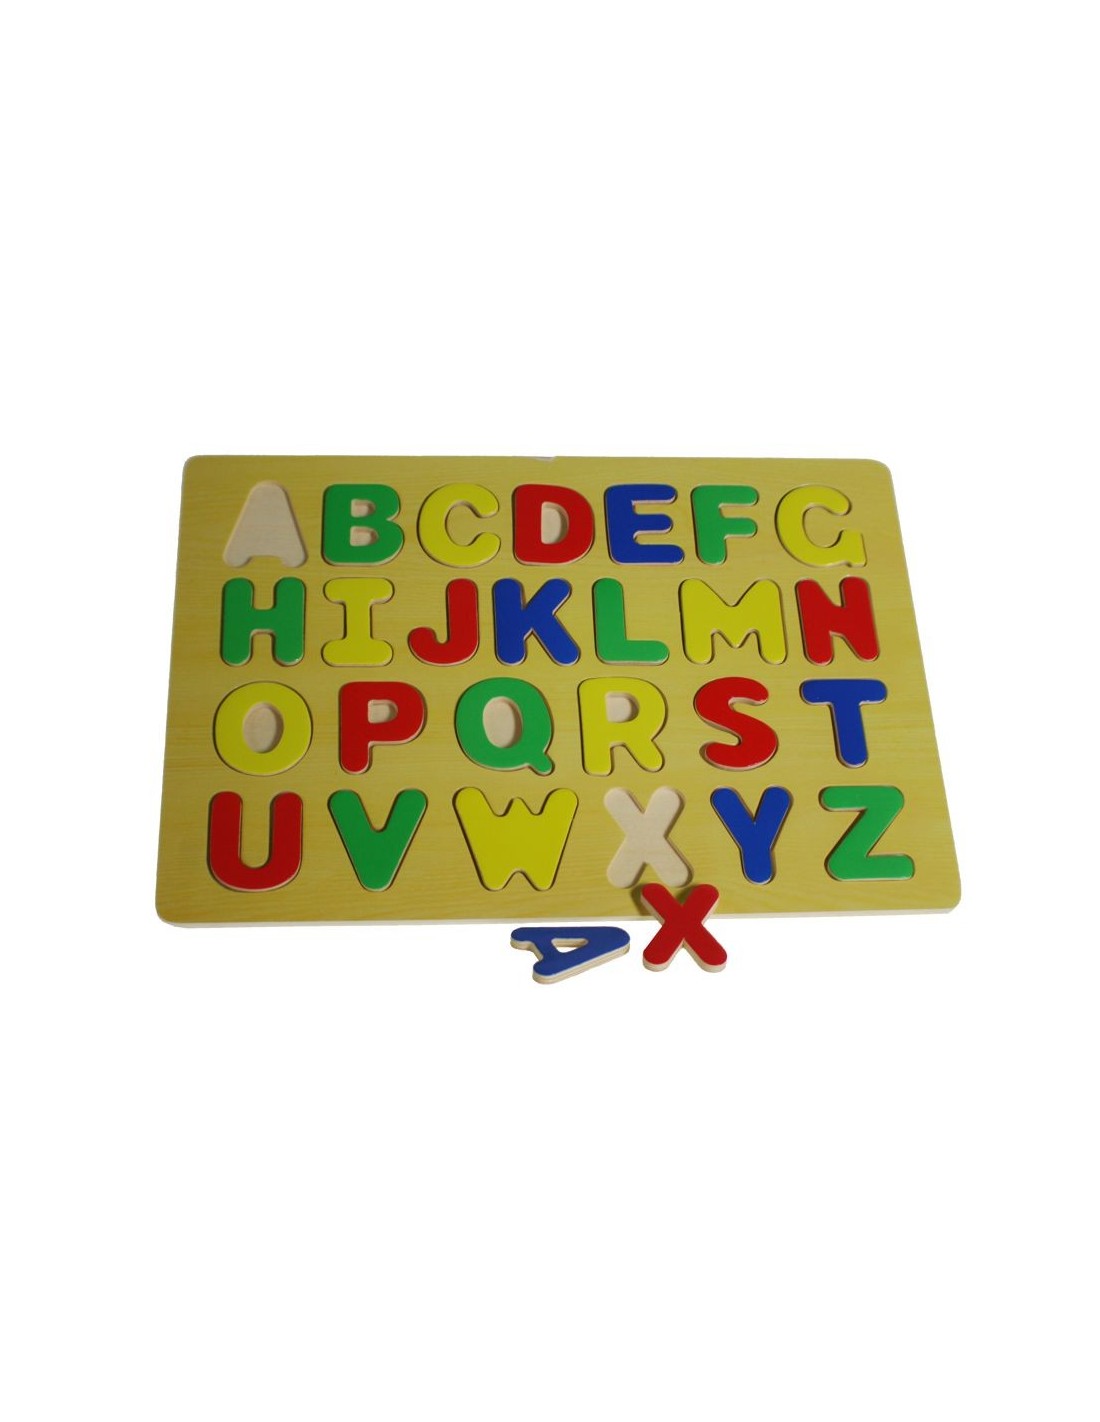 Puzle de lletres de fusta per encaixar joc educatiu infantil per aprendre l'abecedari. 